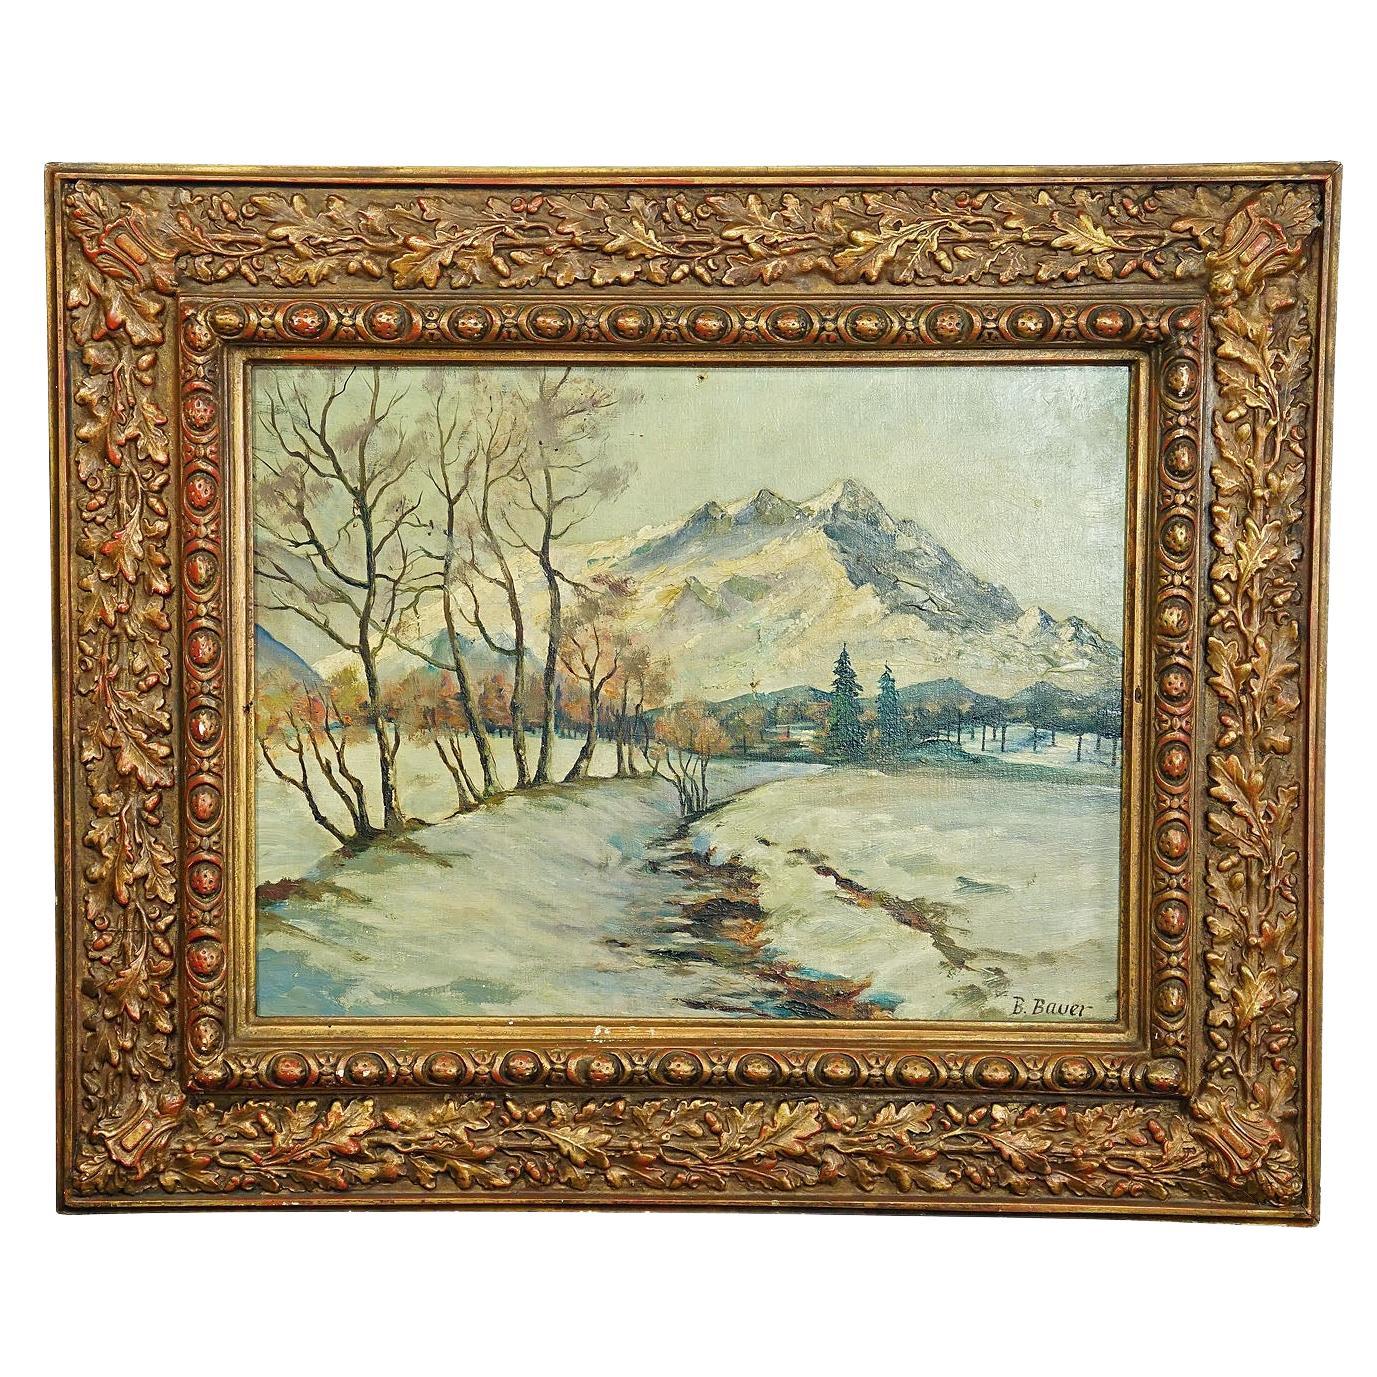 B. Bauer, Peinture à l'huile - Paysage d'hiver alpin, début du 20e siècle